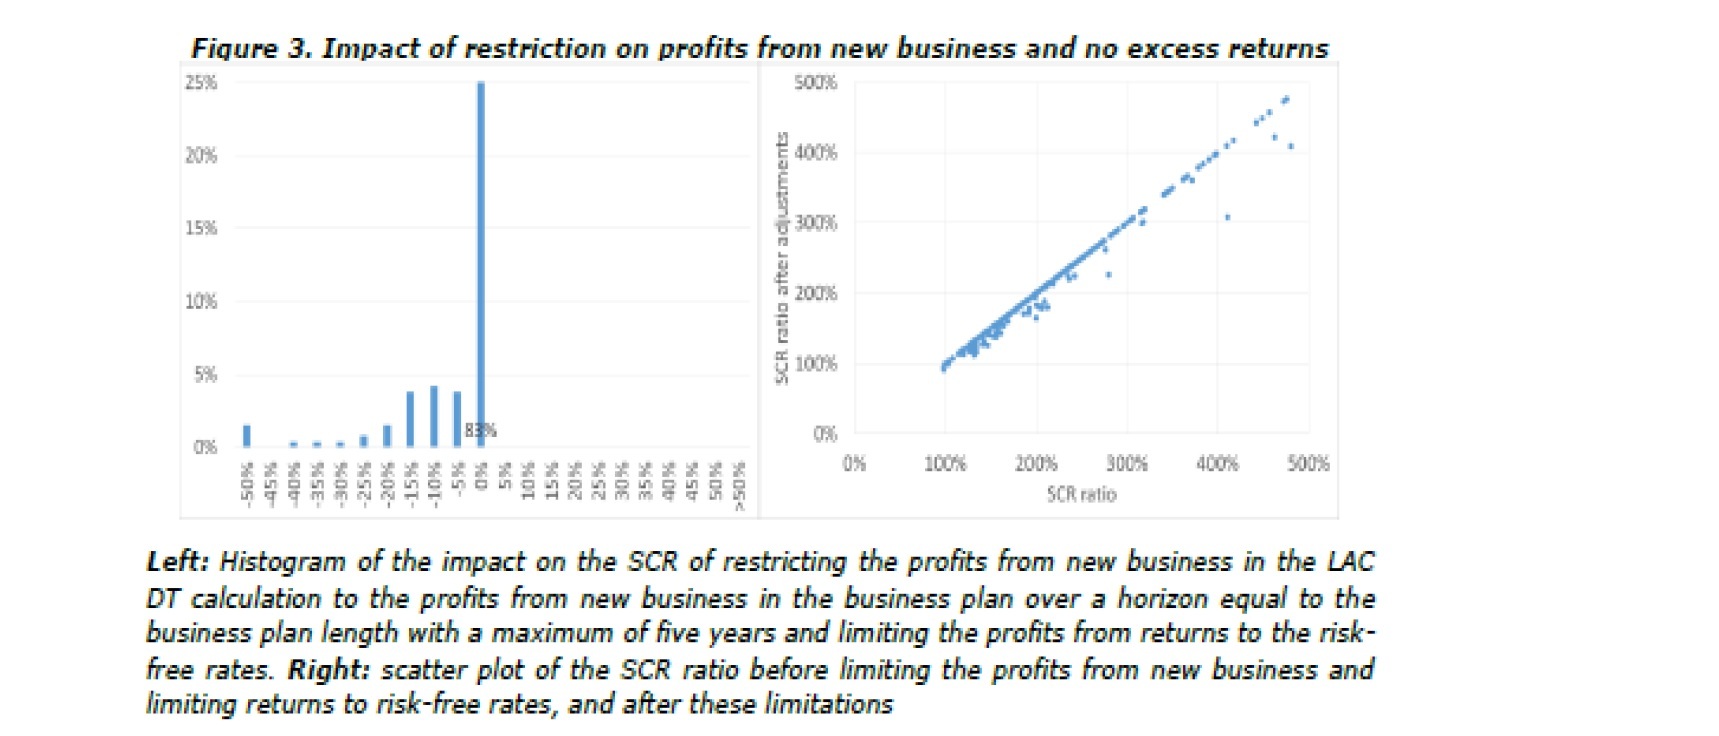 現在のSCR比率と新契約からの将来利益を事業計画に制限しかつリターンからの利益をリスクフリーリターンに限定した後のSCR比率を